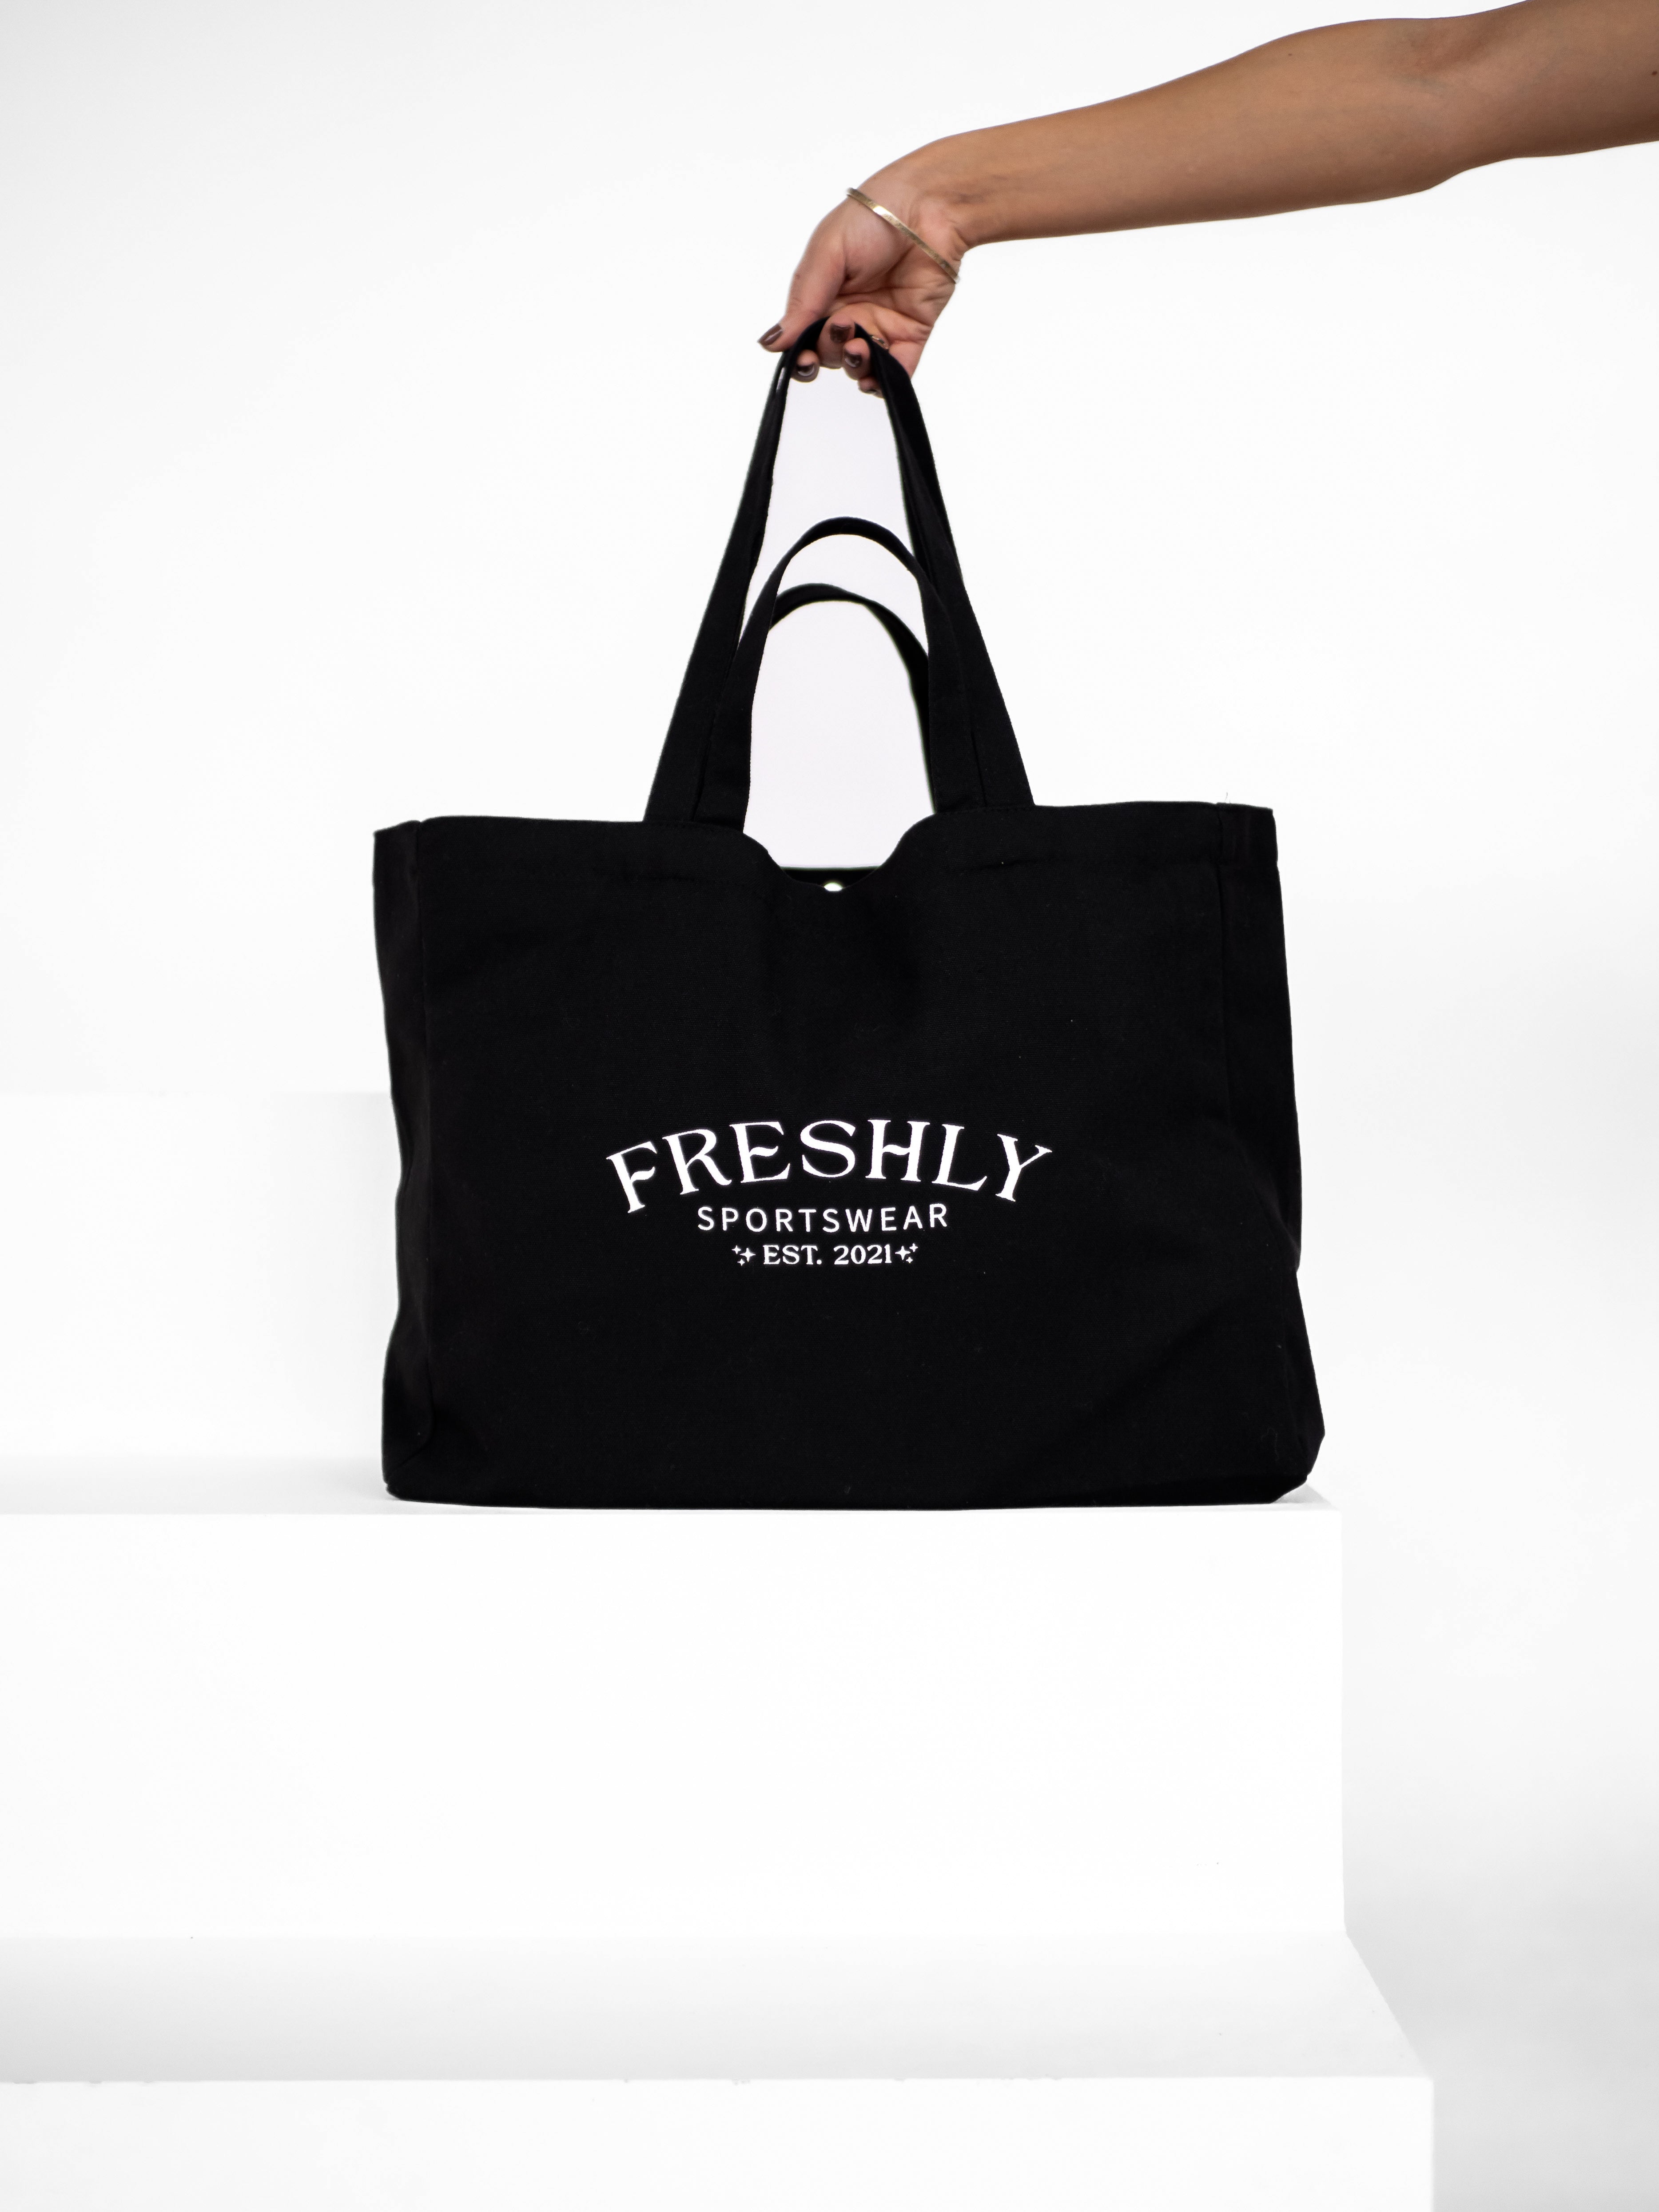 FRESHLY Tote Bag - Black